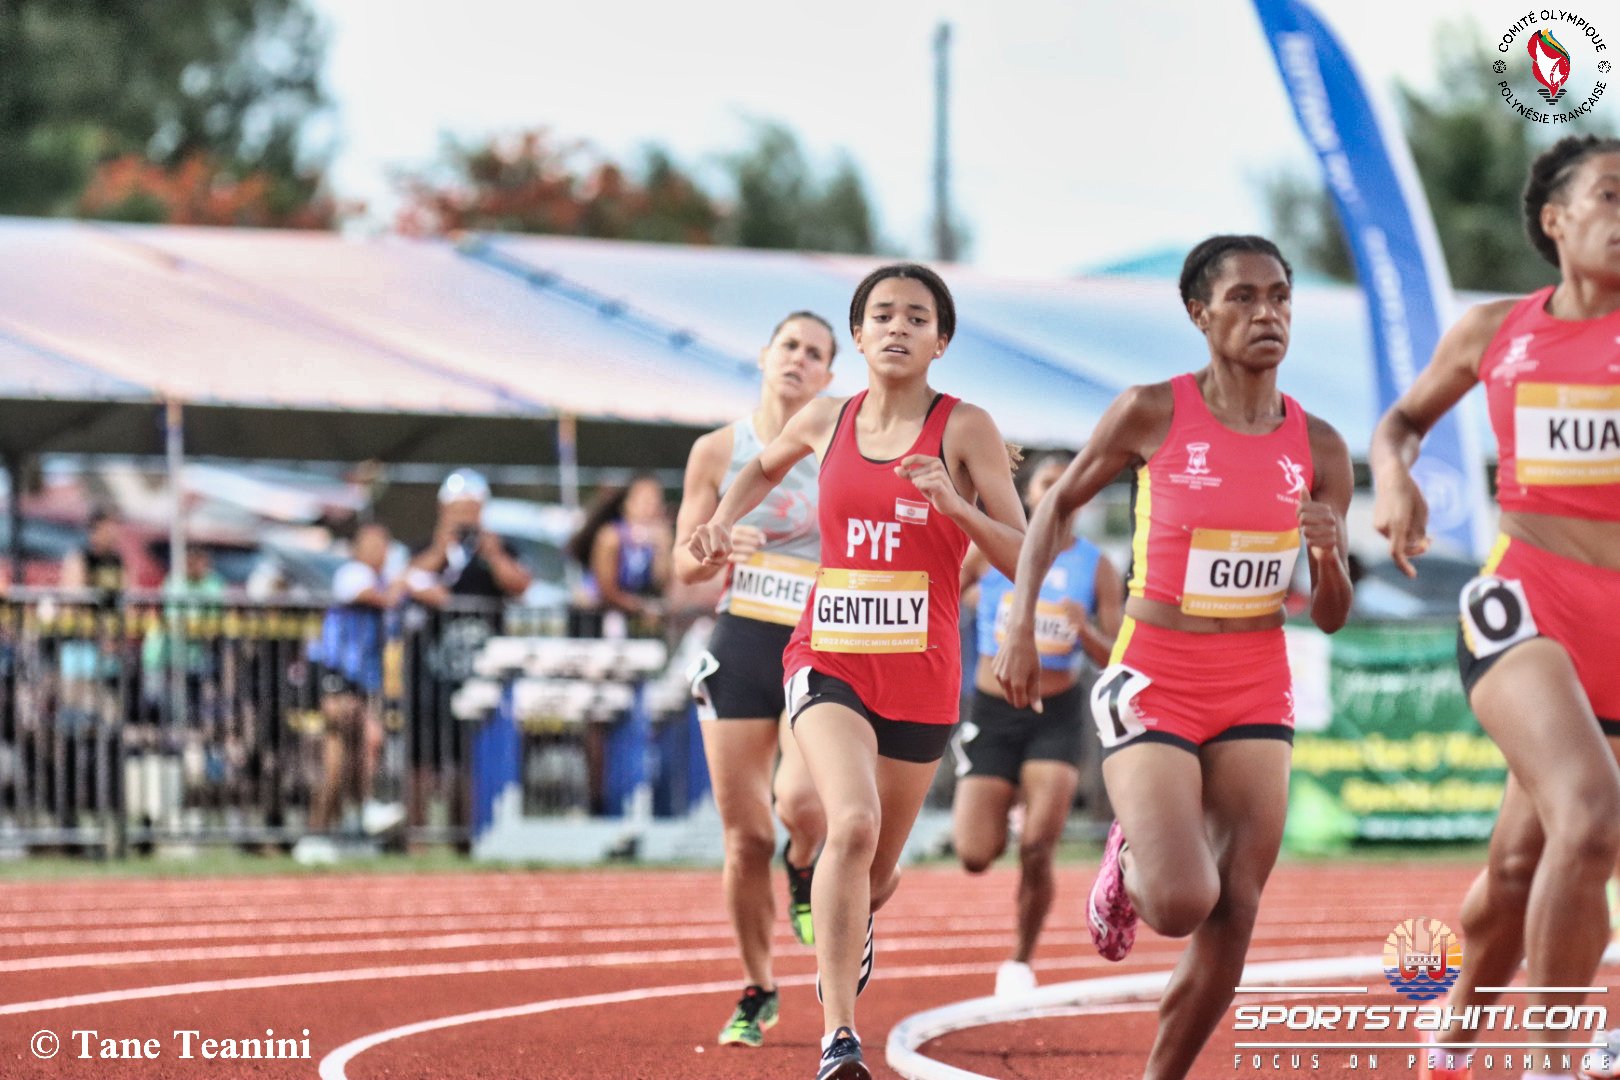 La bonne surprise en athlétisme, lundi, est venue d'Estelle Gentilly, 16 an, sur le 800 mètres où elle a décroché l'argent. (© sportstahiti.com – Tane)